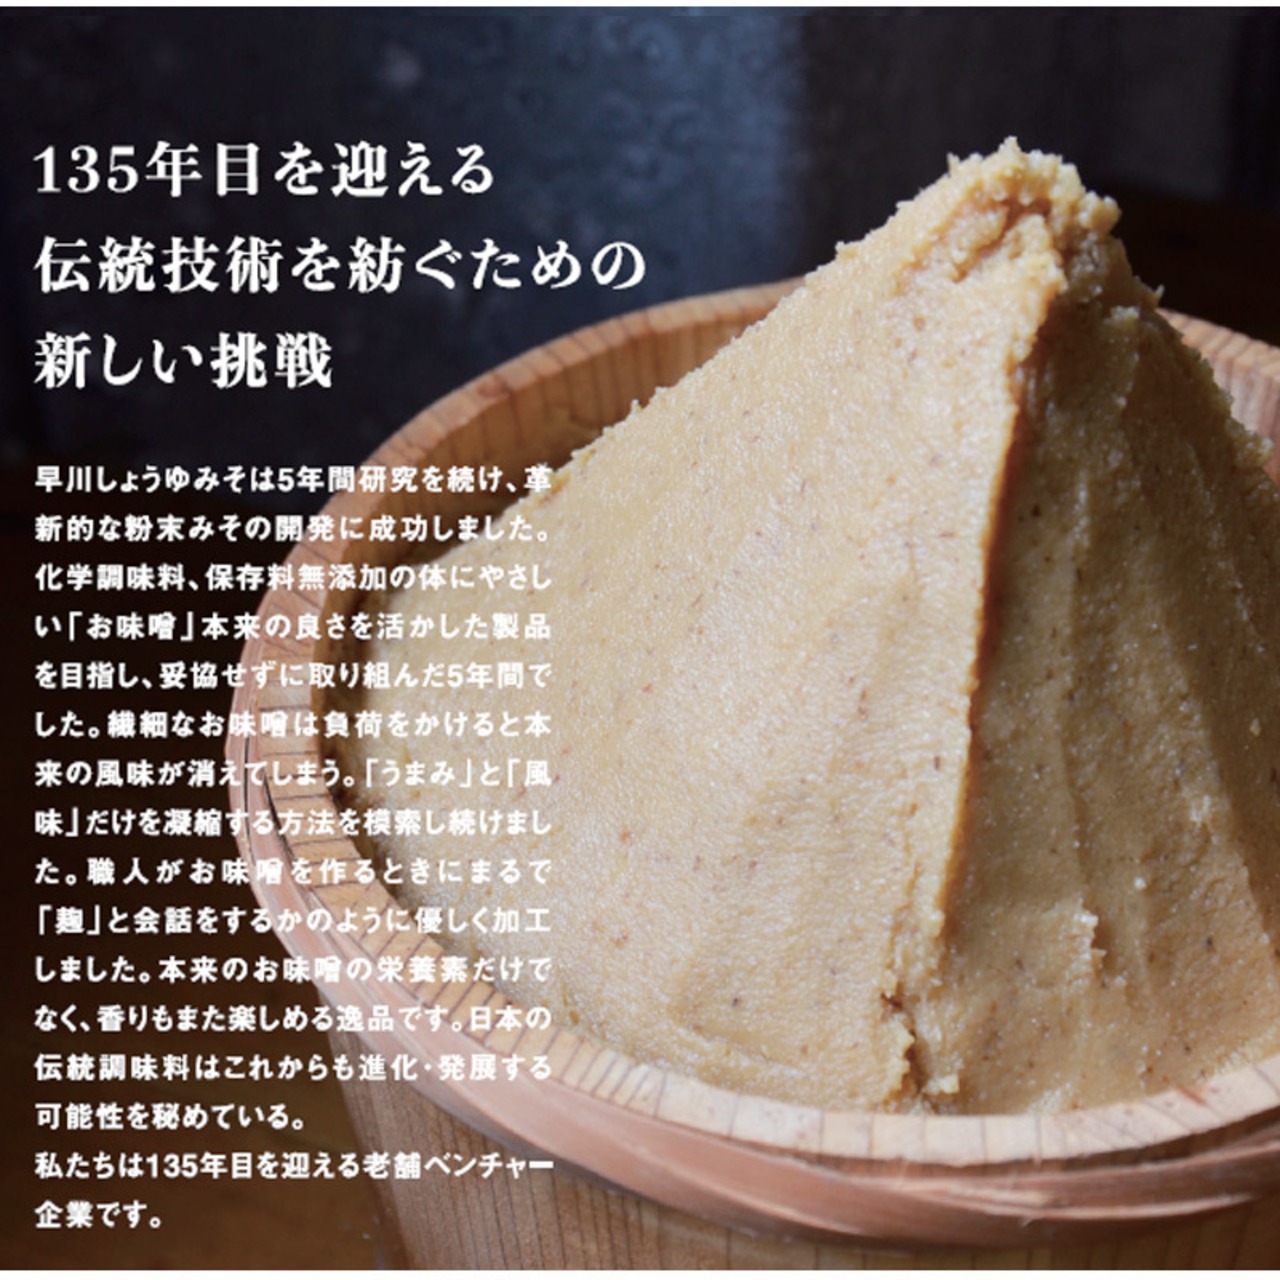 早川しょうゆみそ 早川のみそパウダー umami・so -みそ- 70g 3本セット 乾燥味噌